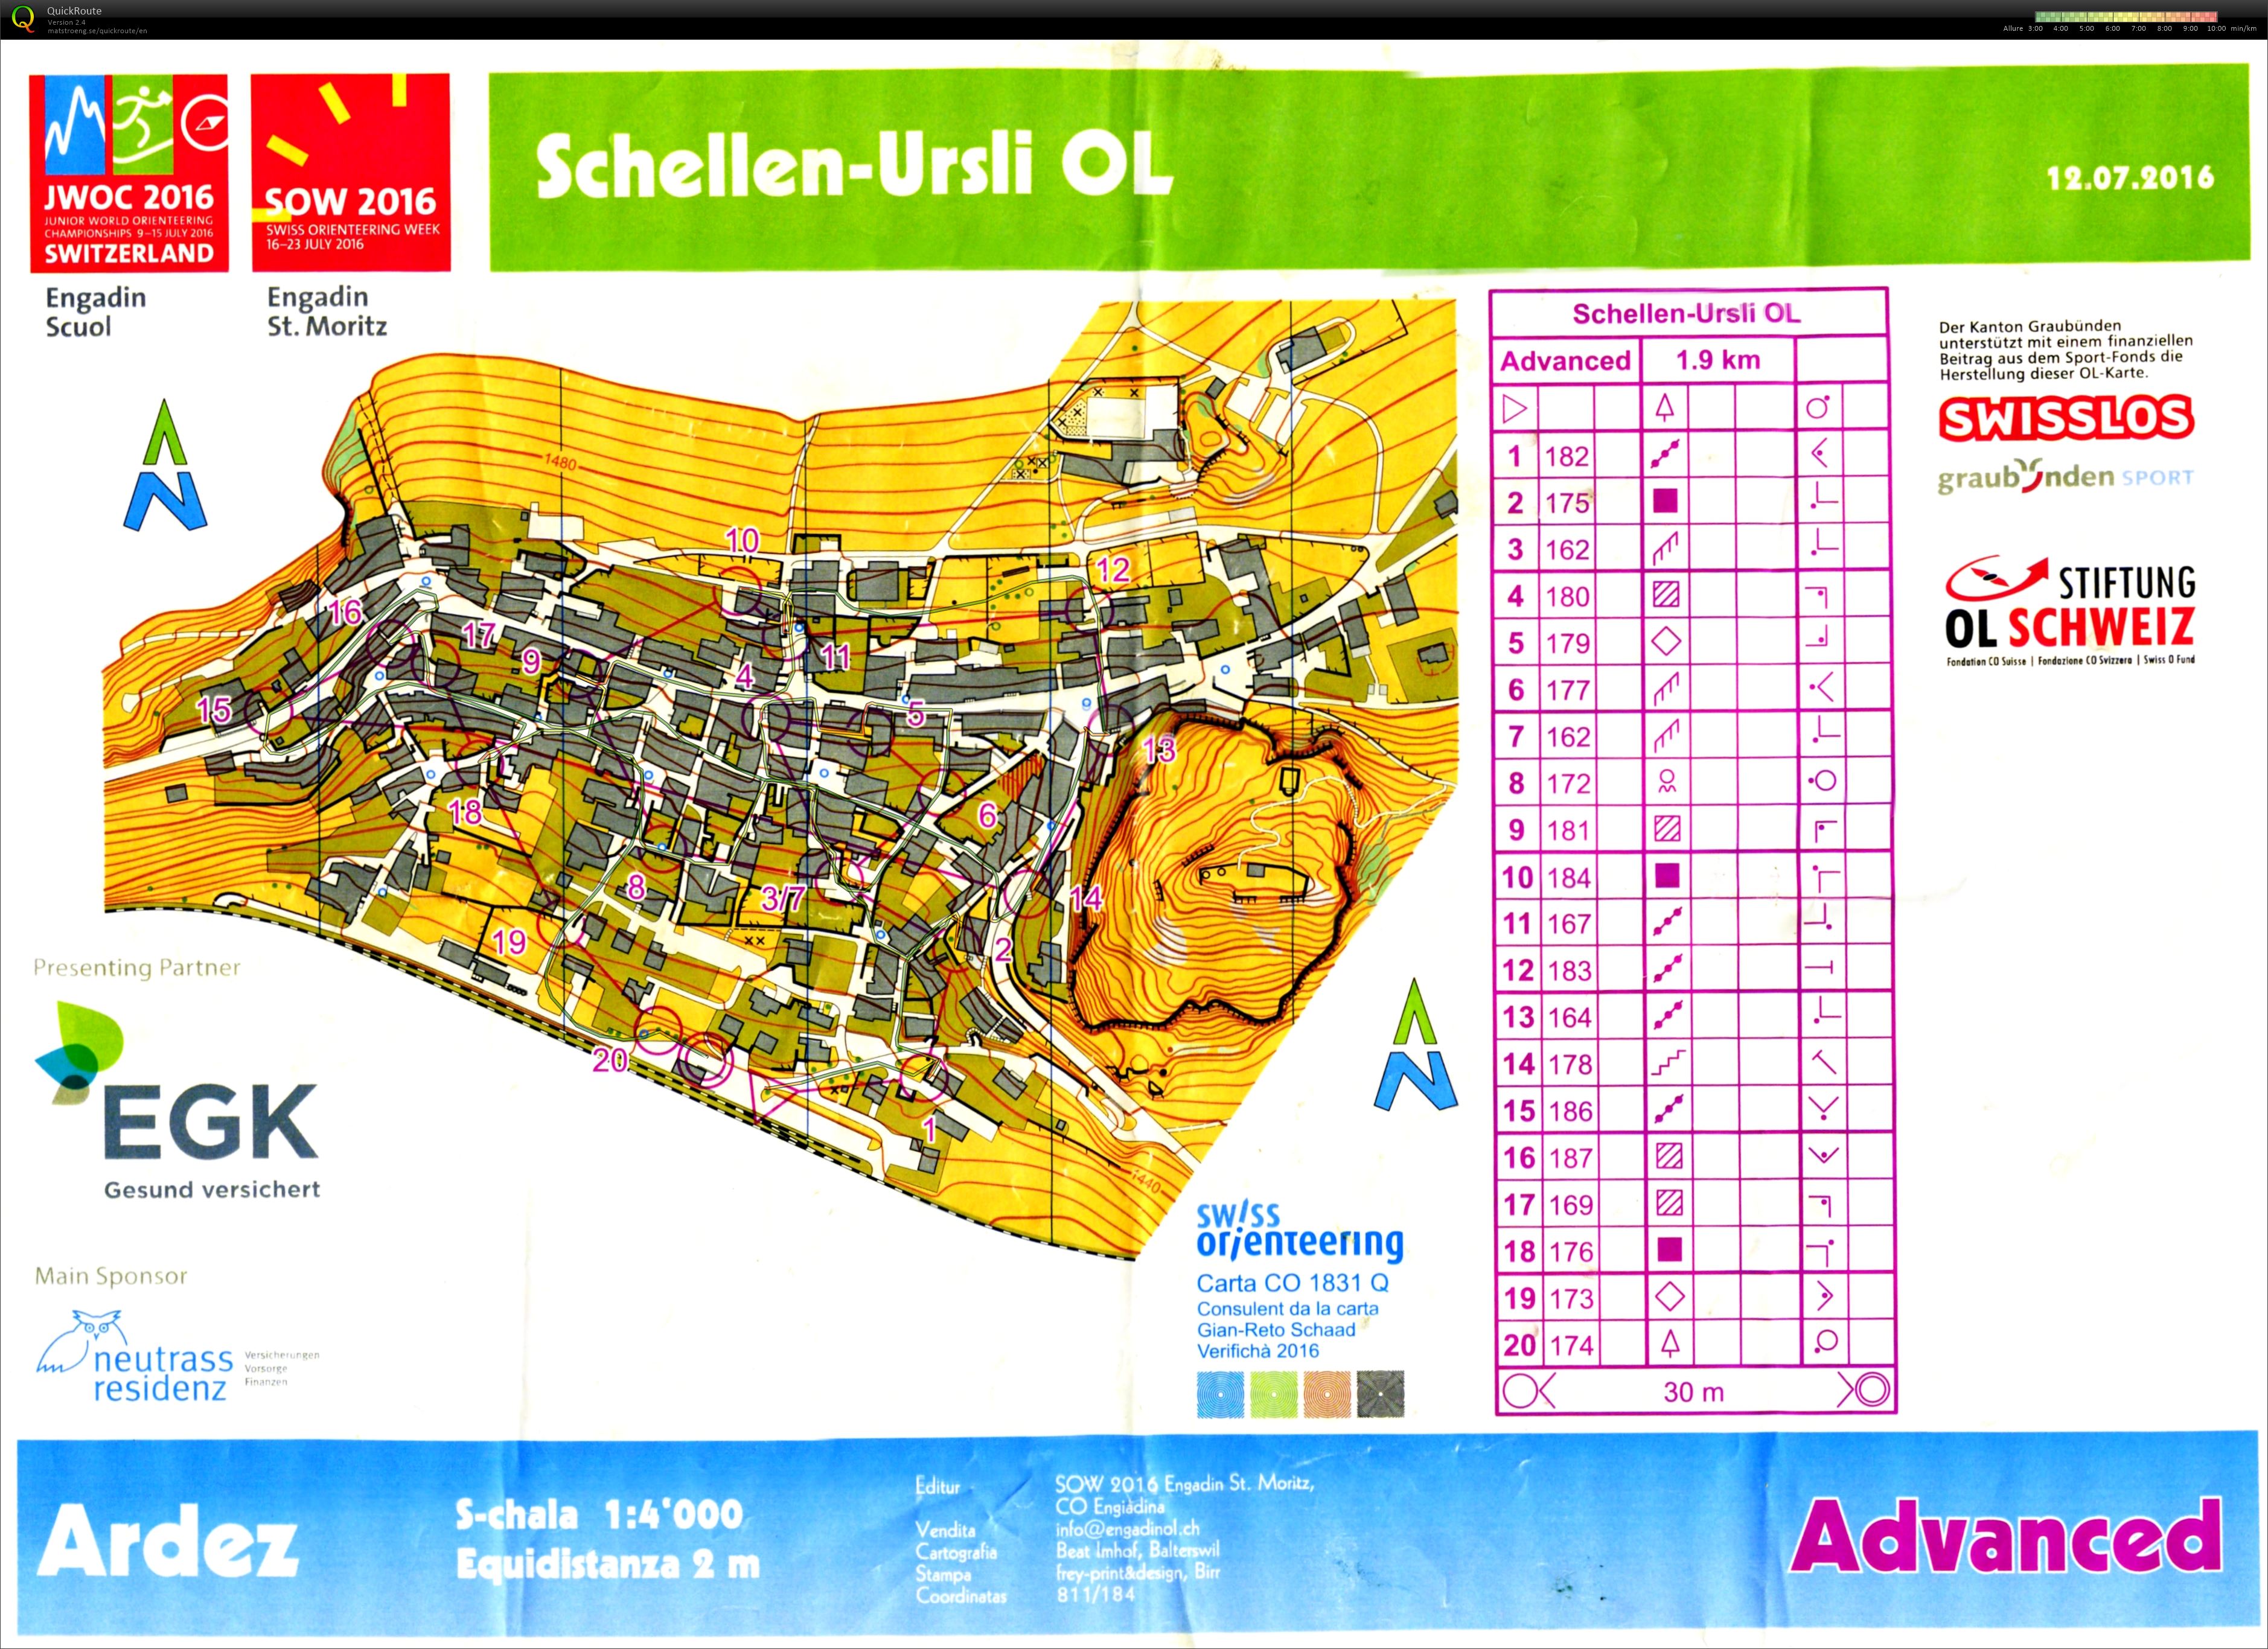 Schellen-Ursli OL (12.07.2016)